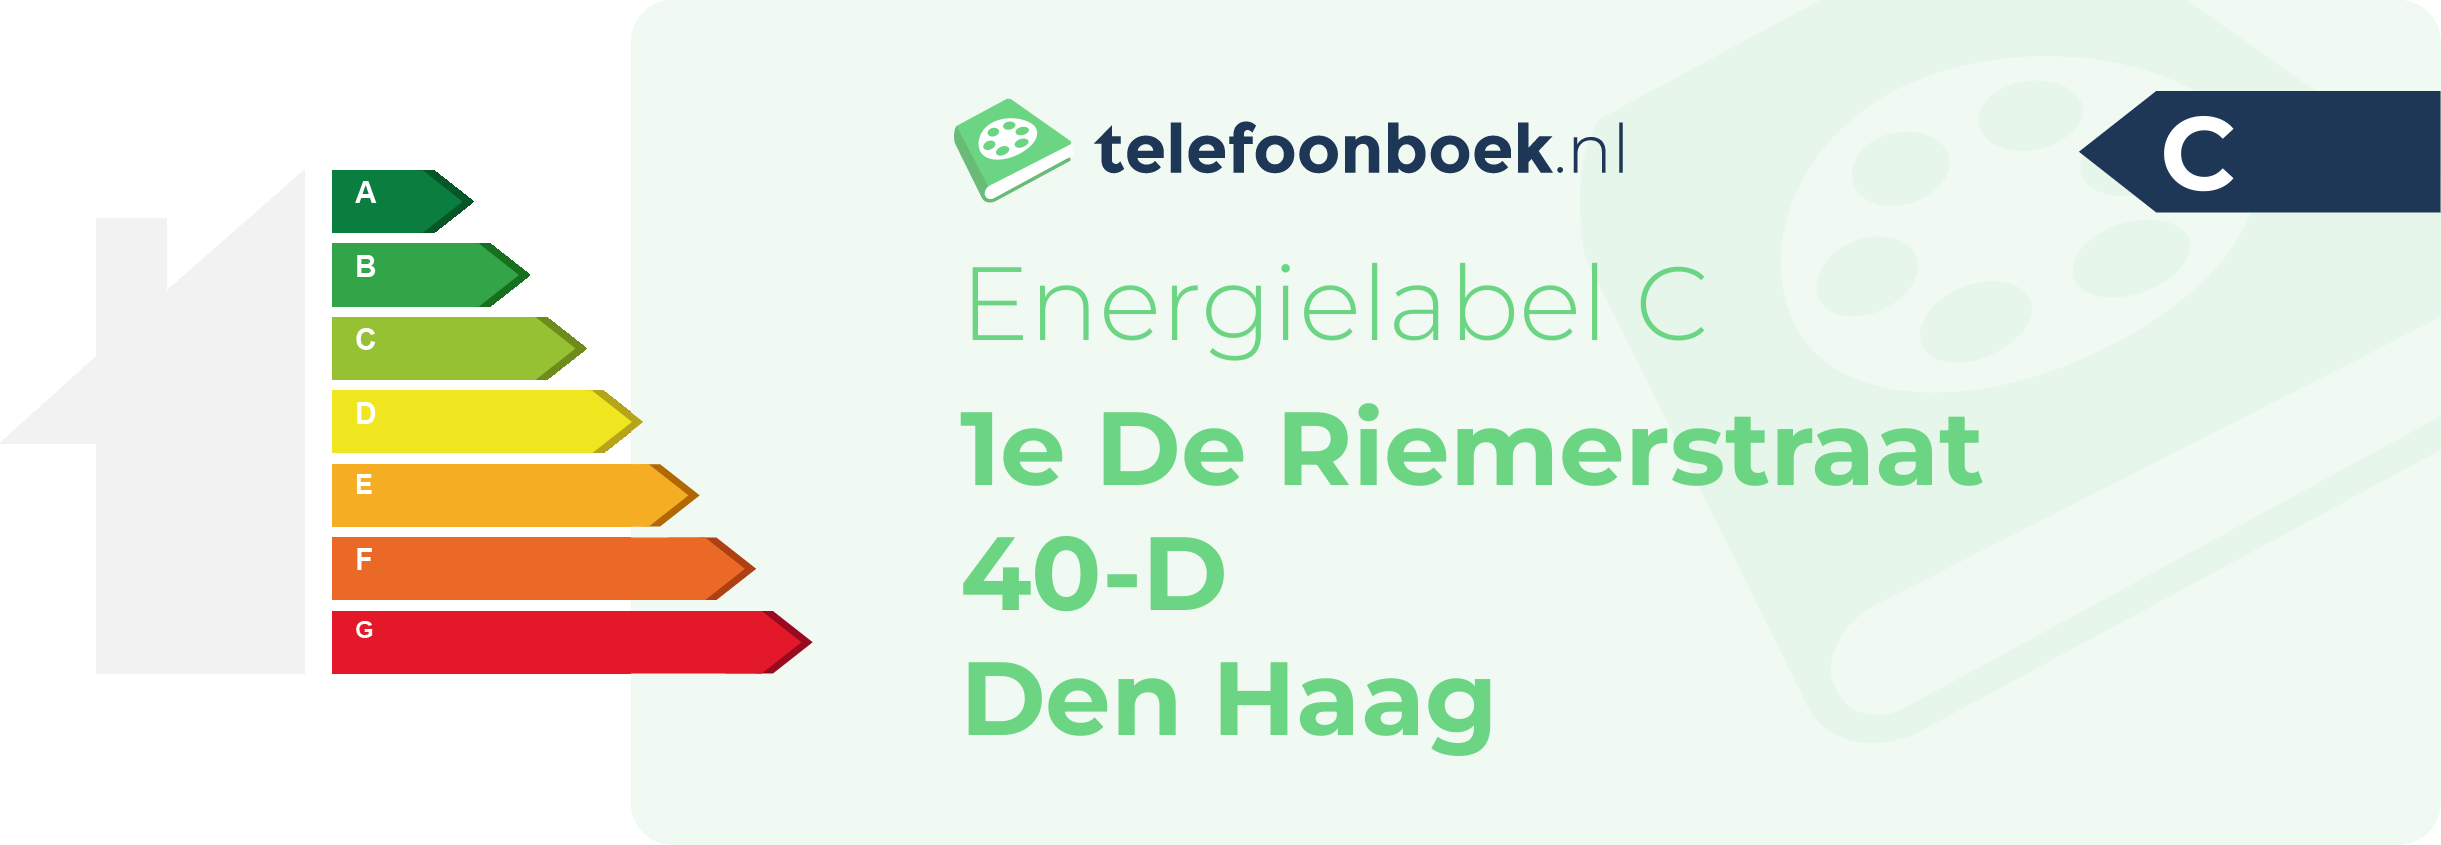 Energielabel 1e De Riemerstraat 40-D Den Haag